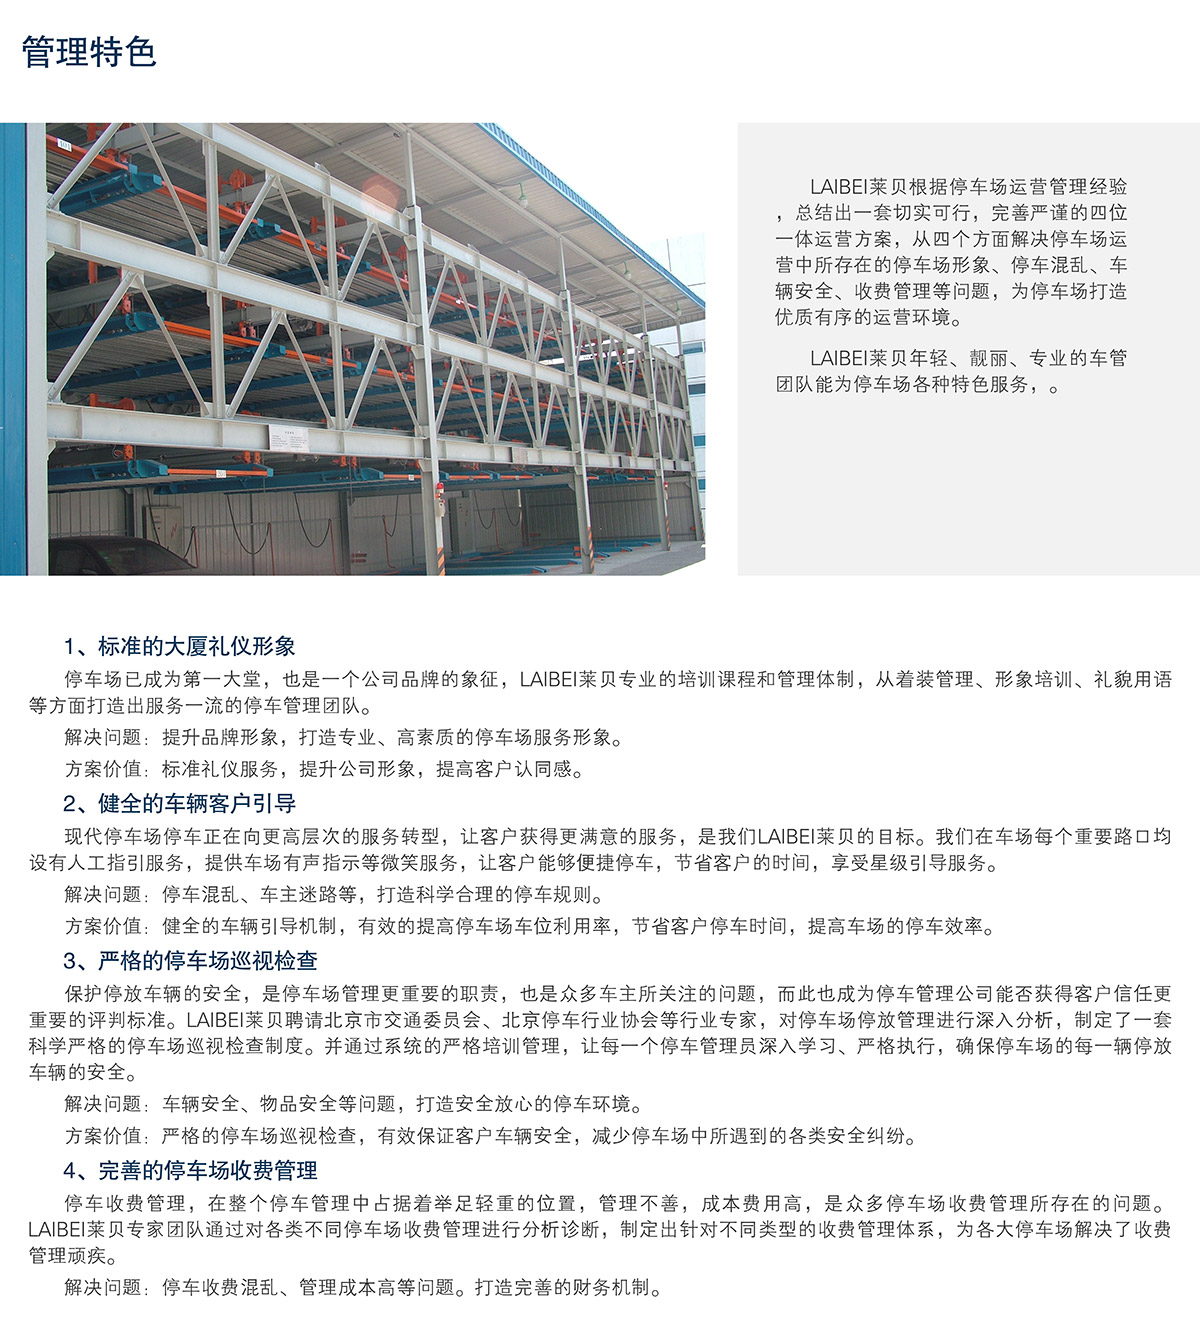 重庆停车场运营管理管理特色.jpg